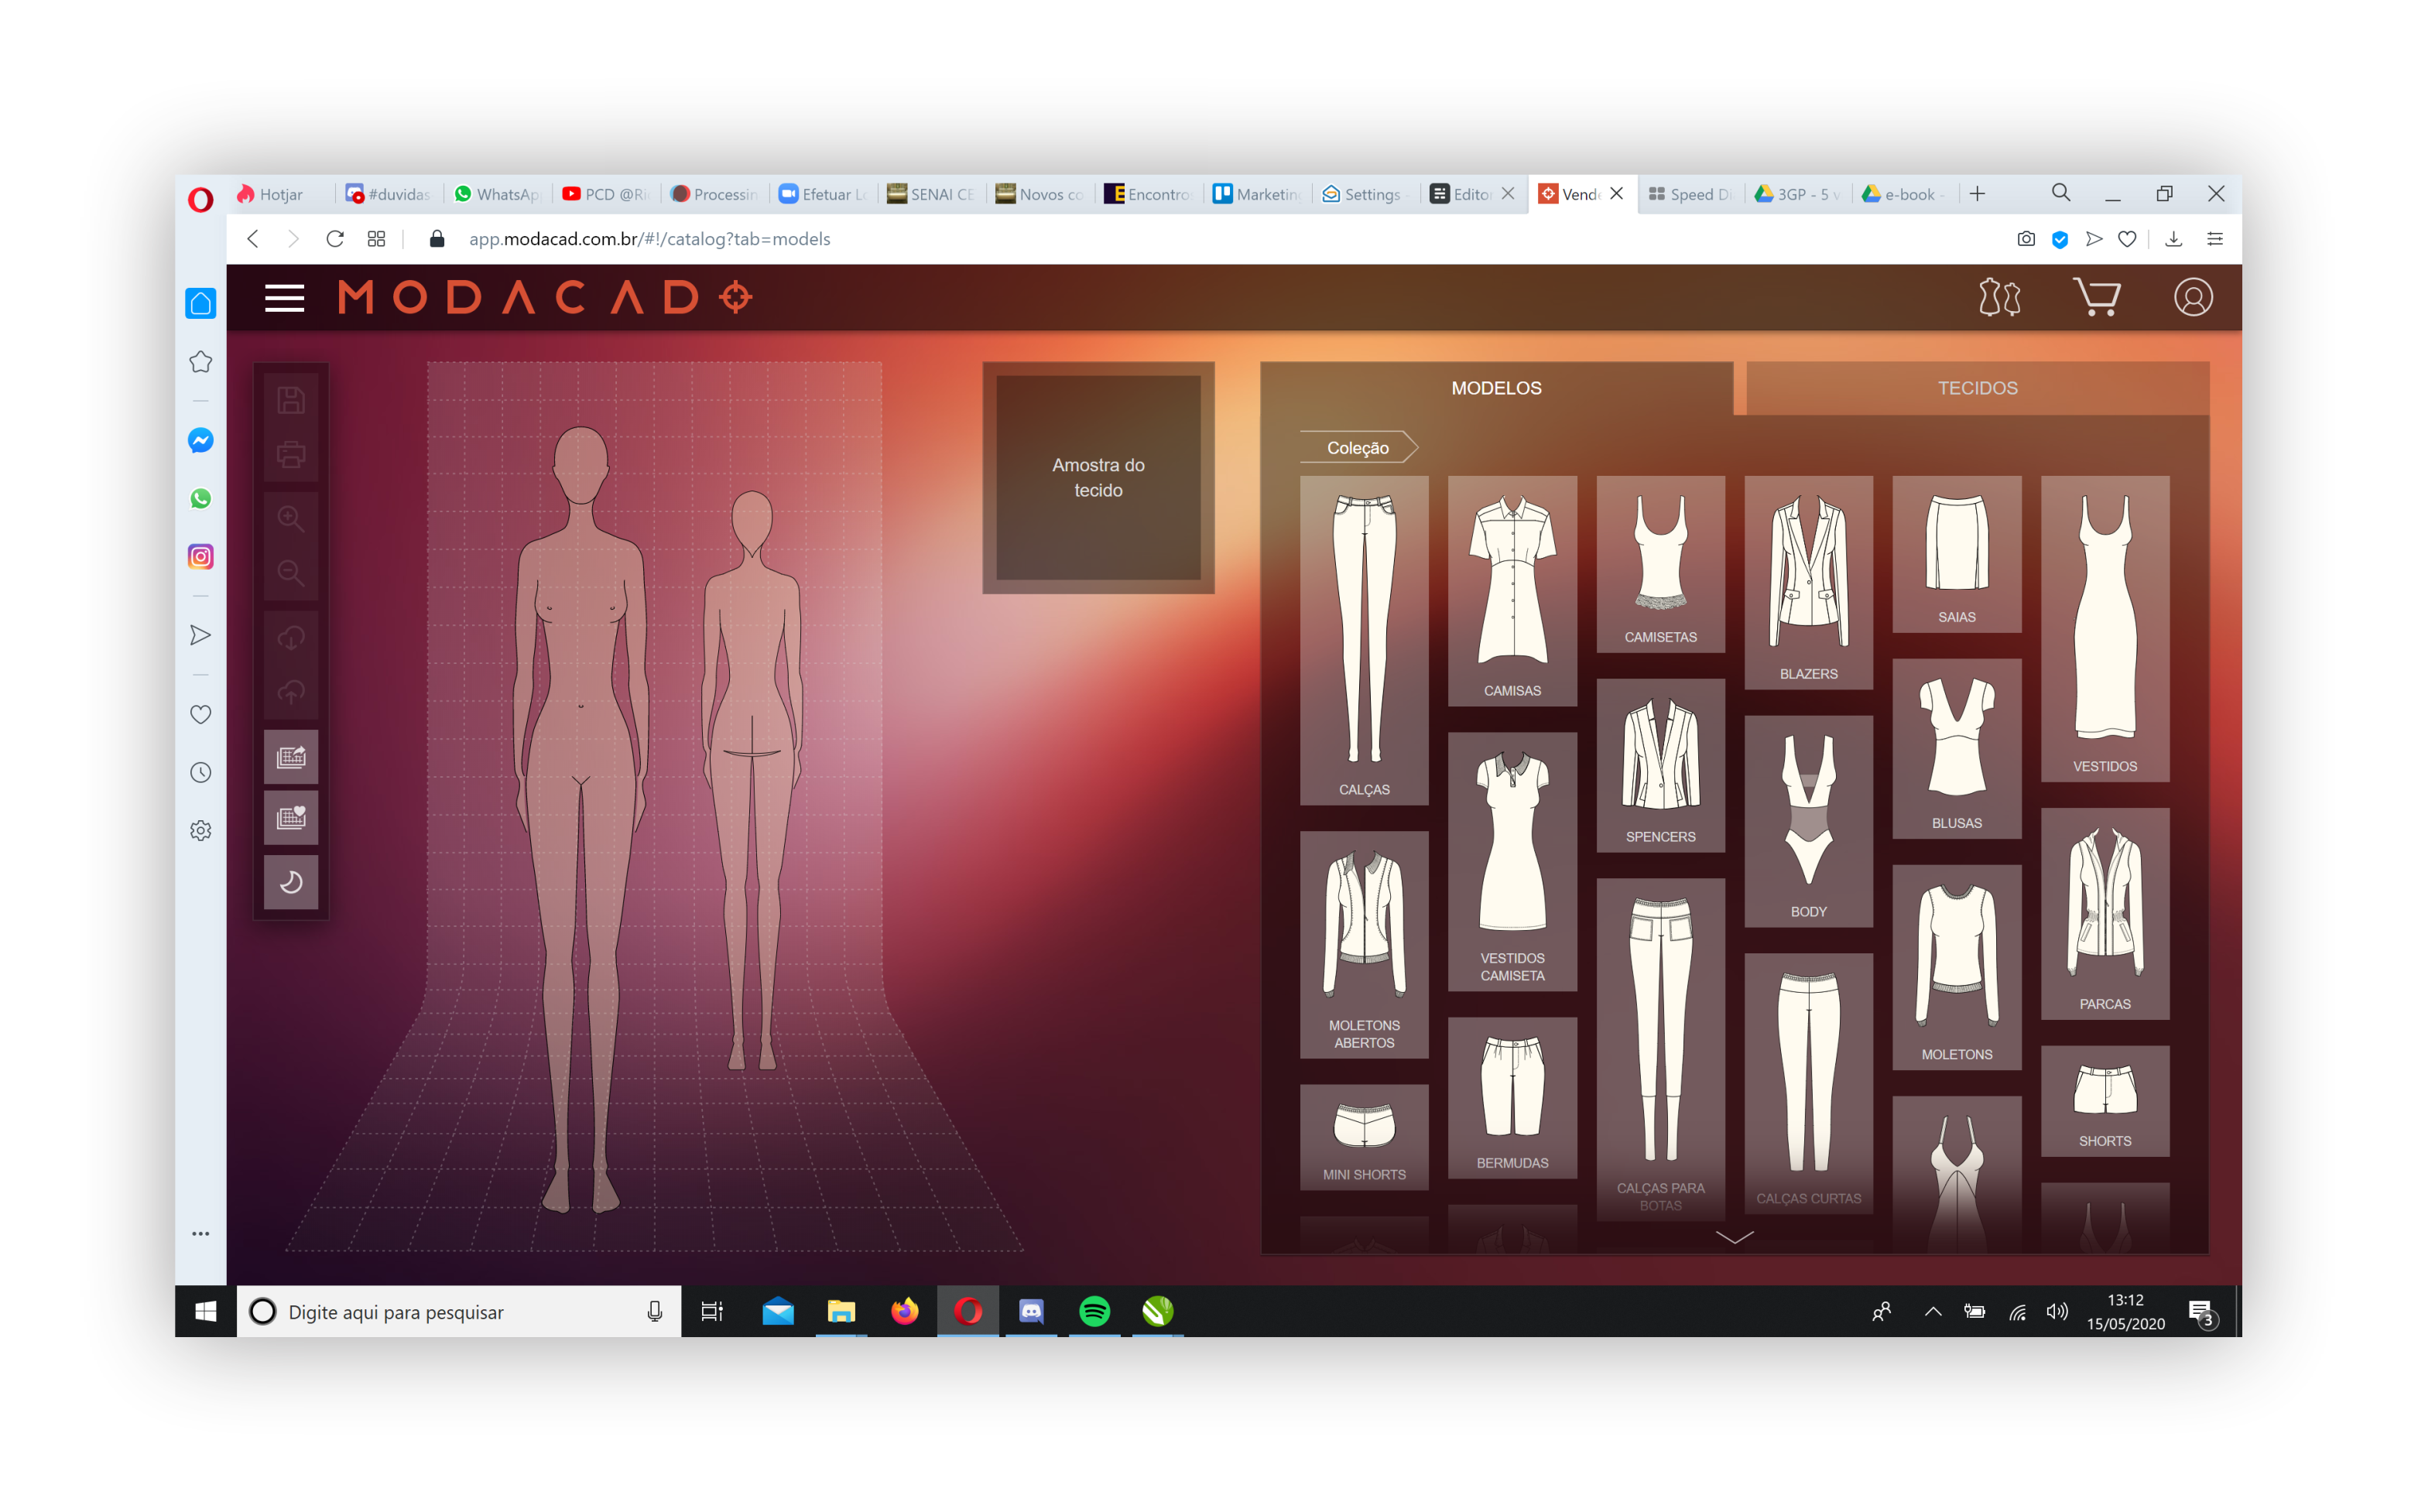 blogModacad-modacad-app-tela-inicio-modelos